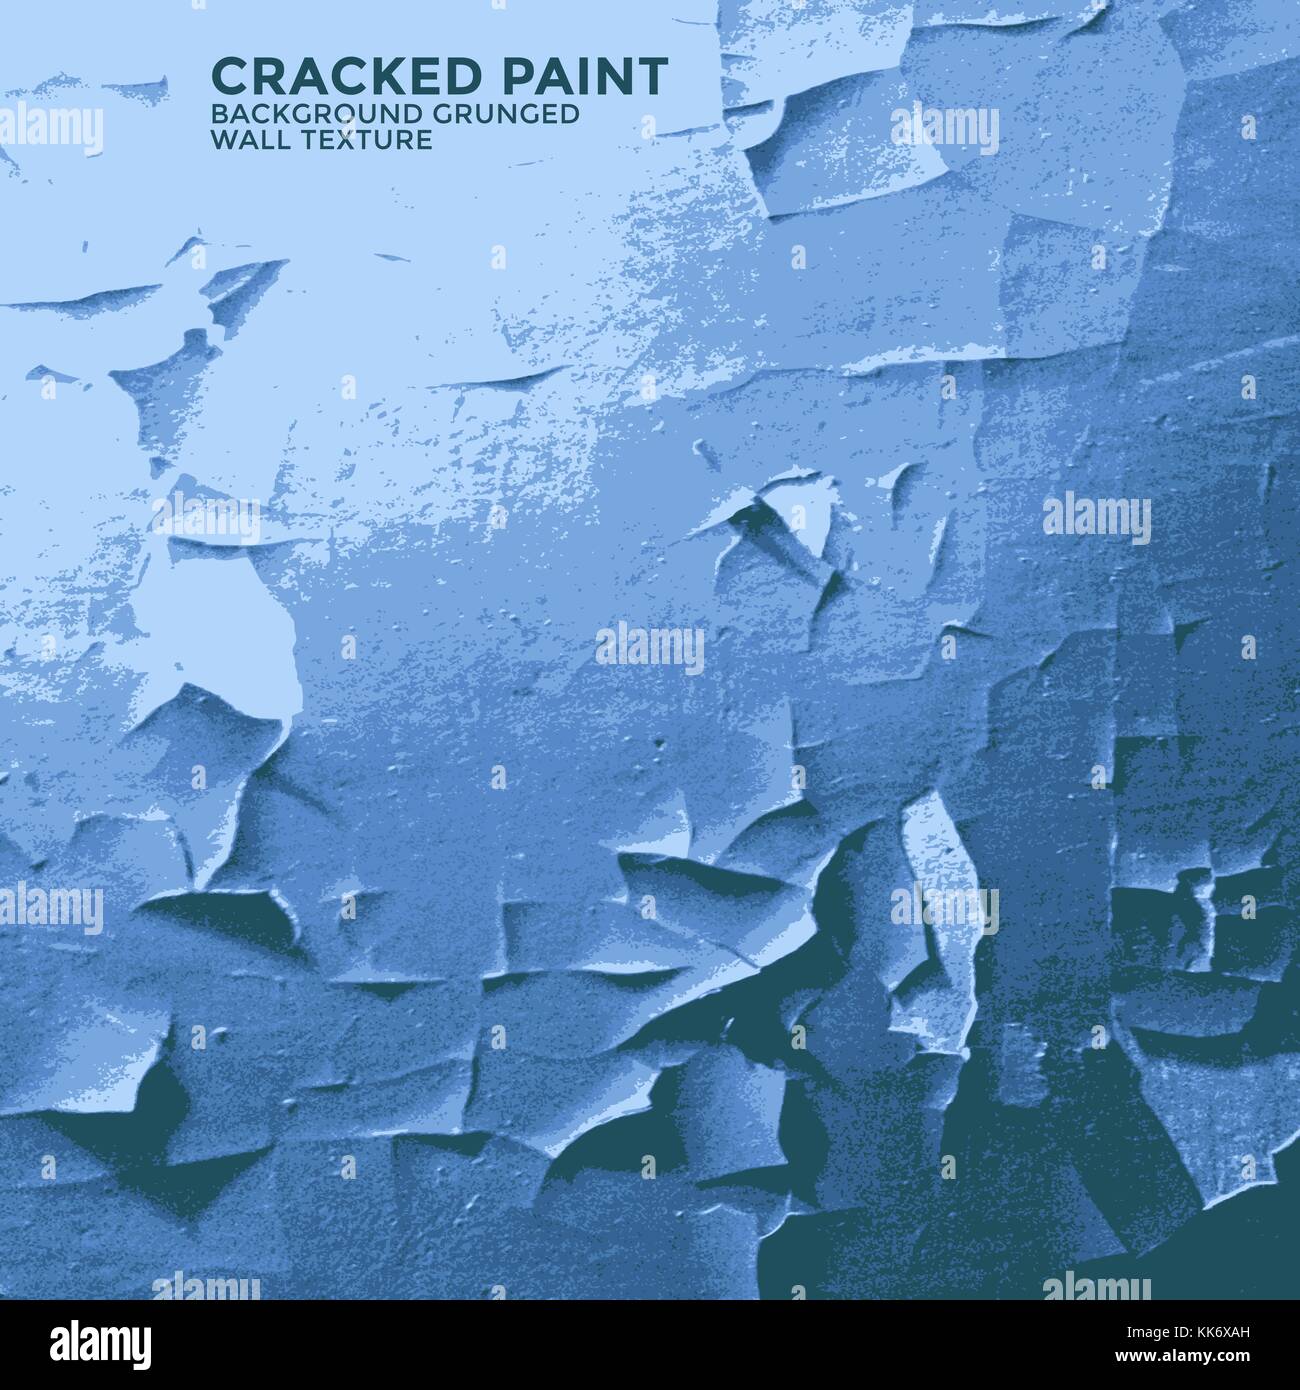 Vector blue vintage coloré peinture craquelée murale décoration retro grunge réaliste effet crackelure texture rugueuse Illustration de Vecteur